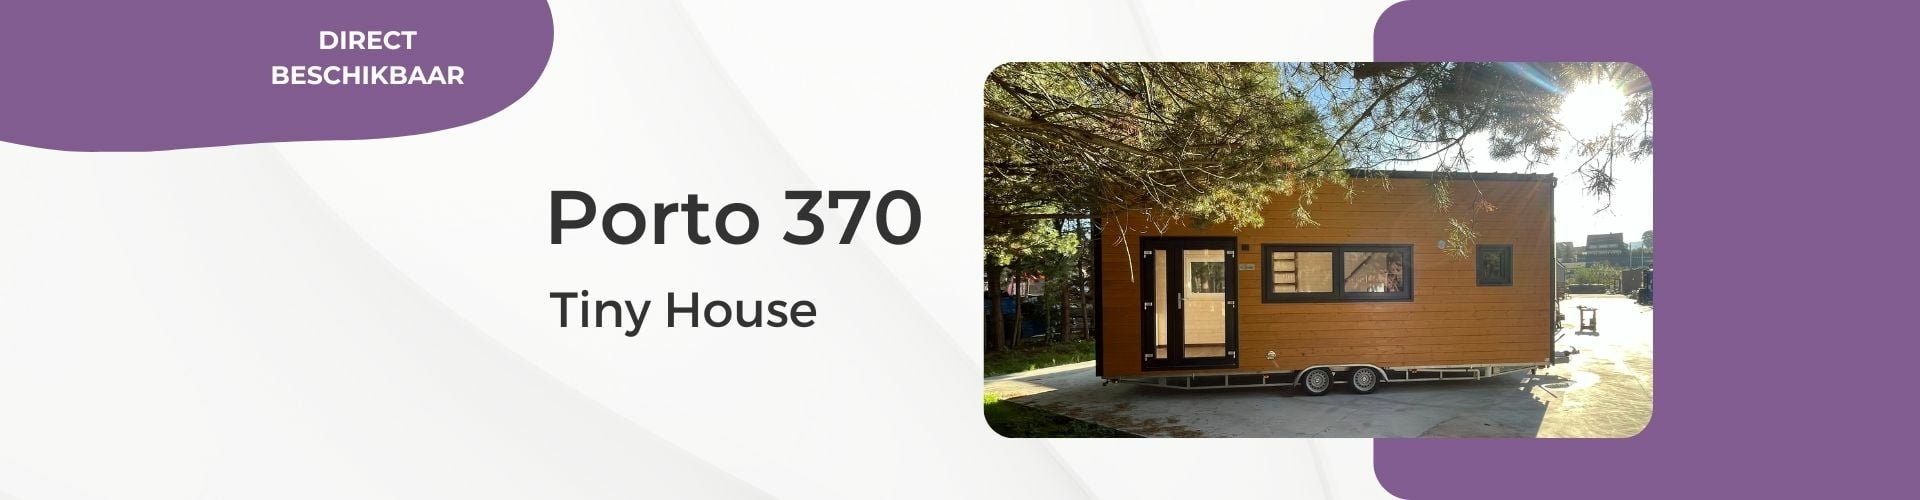 Header Tiny House Porto 370